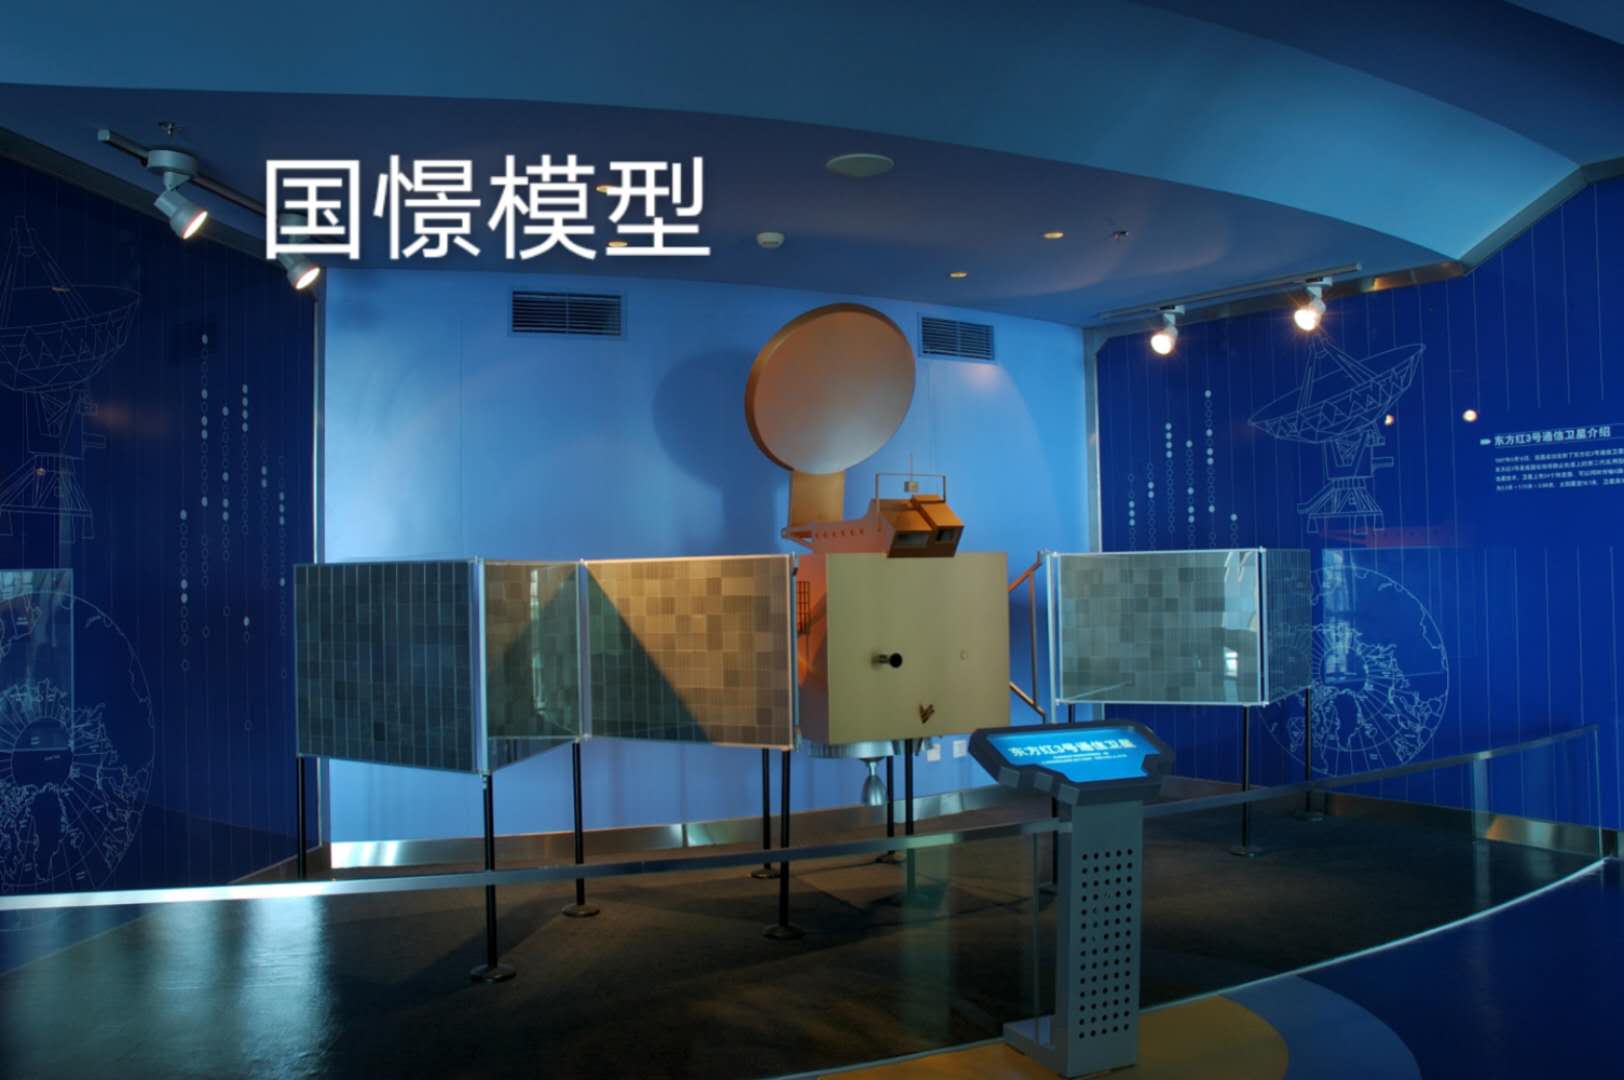 寿宁县航天模型